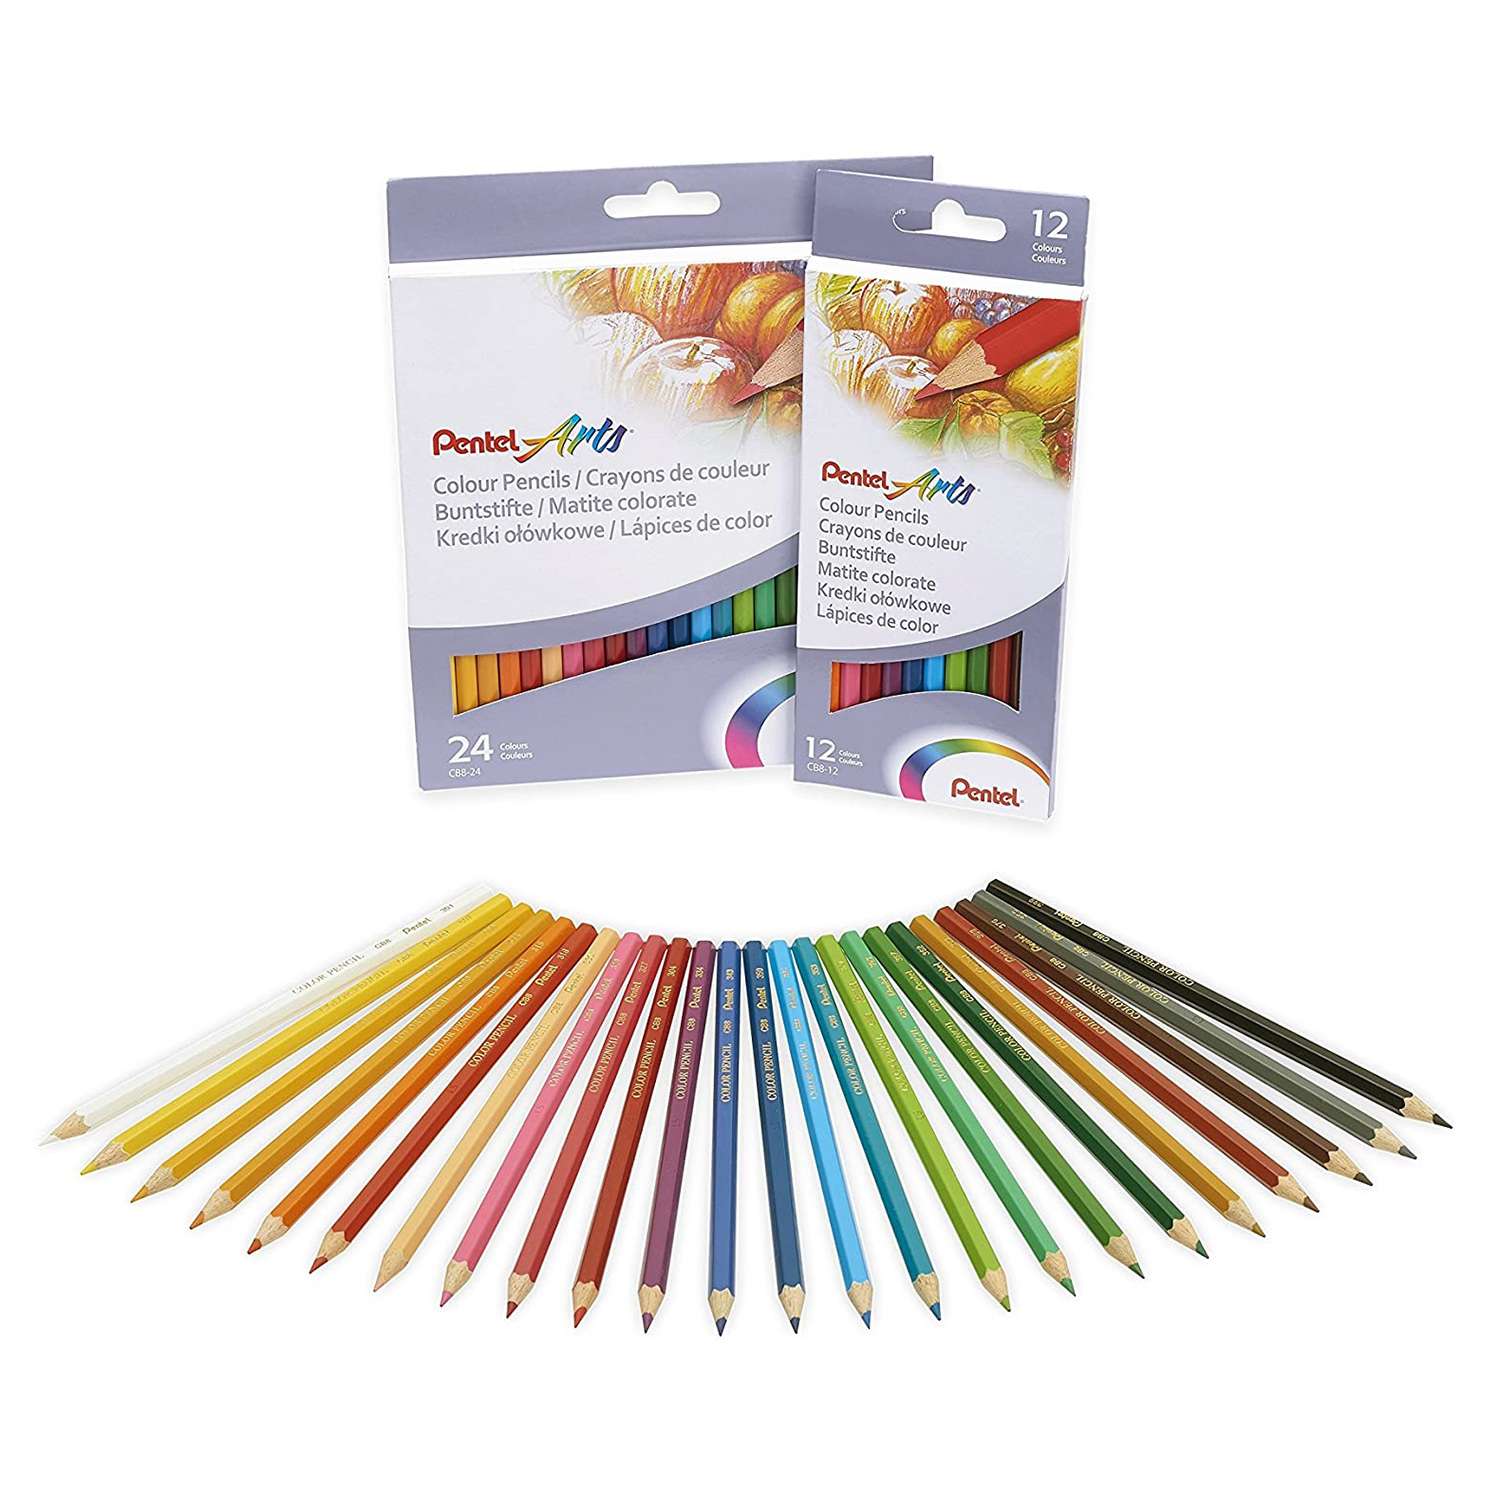 Карандаши  Pentel цветные Colour pencils 12 штук - фото 2